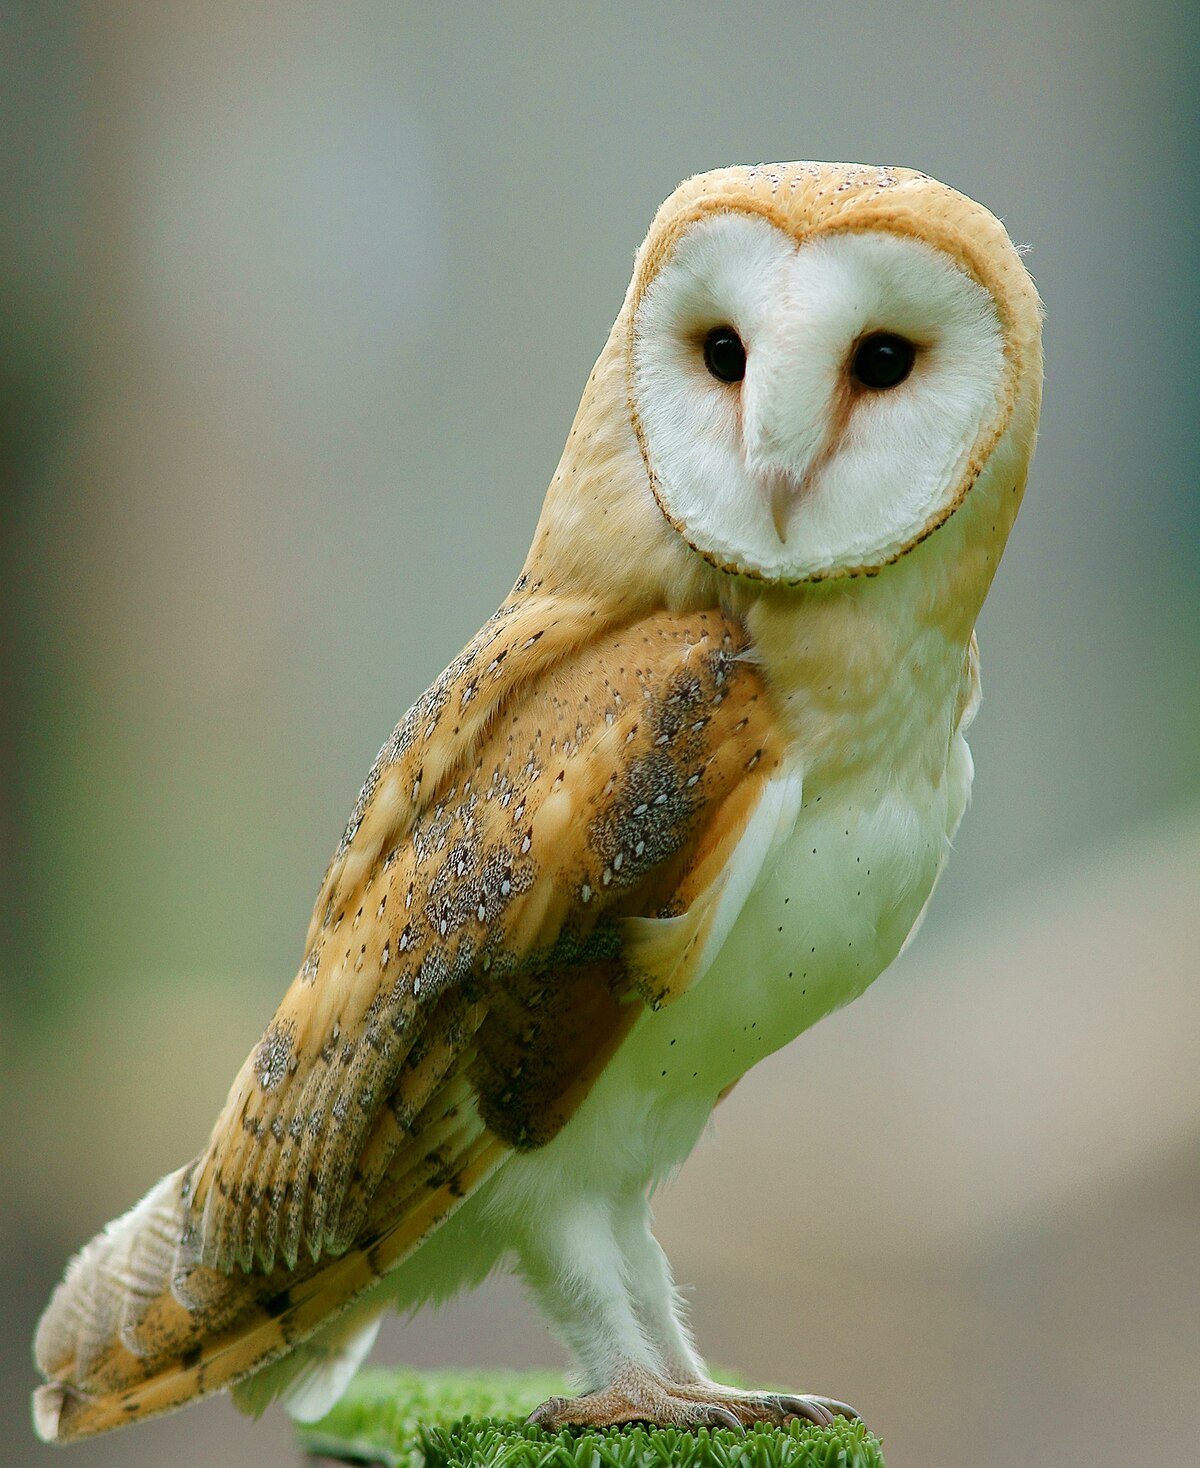 Barn owl - Wikipedia